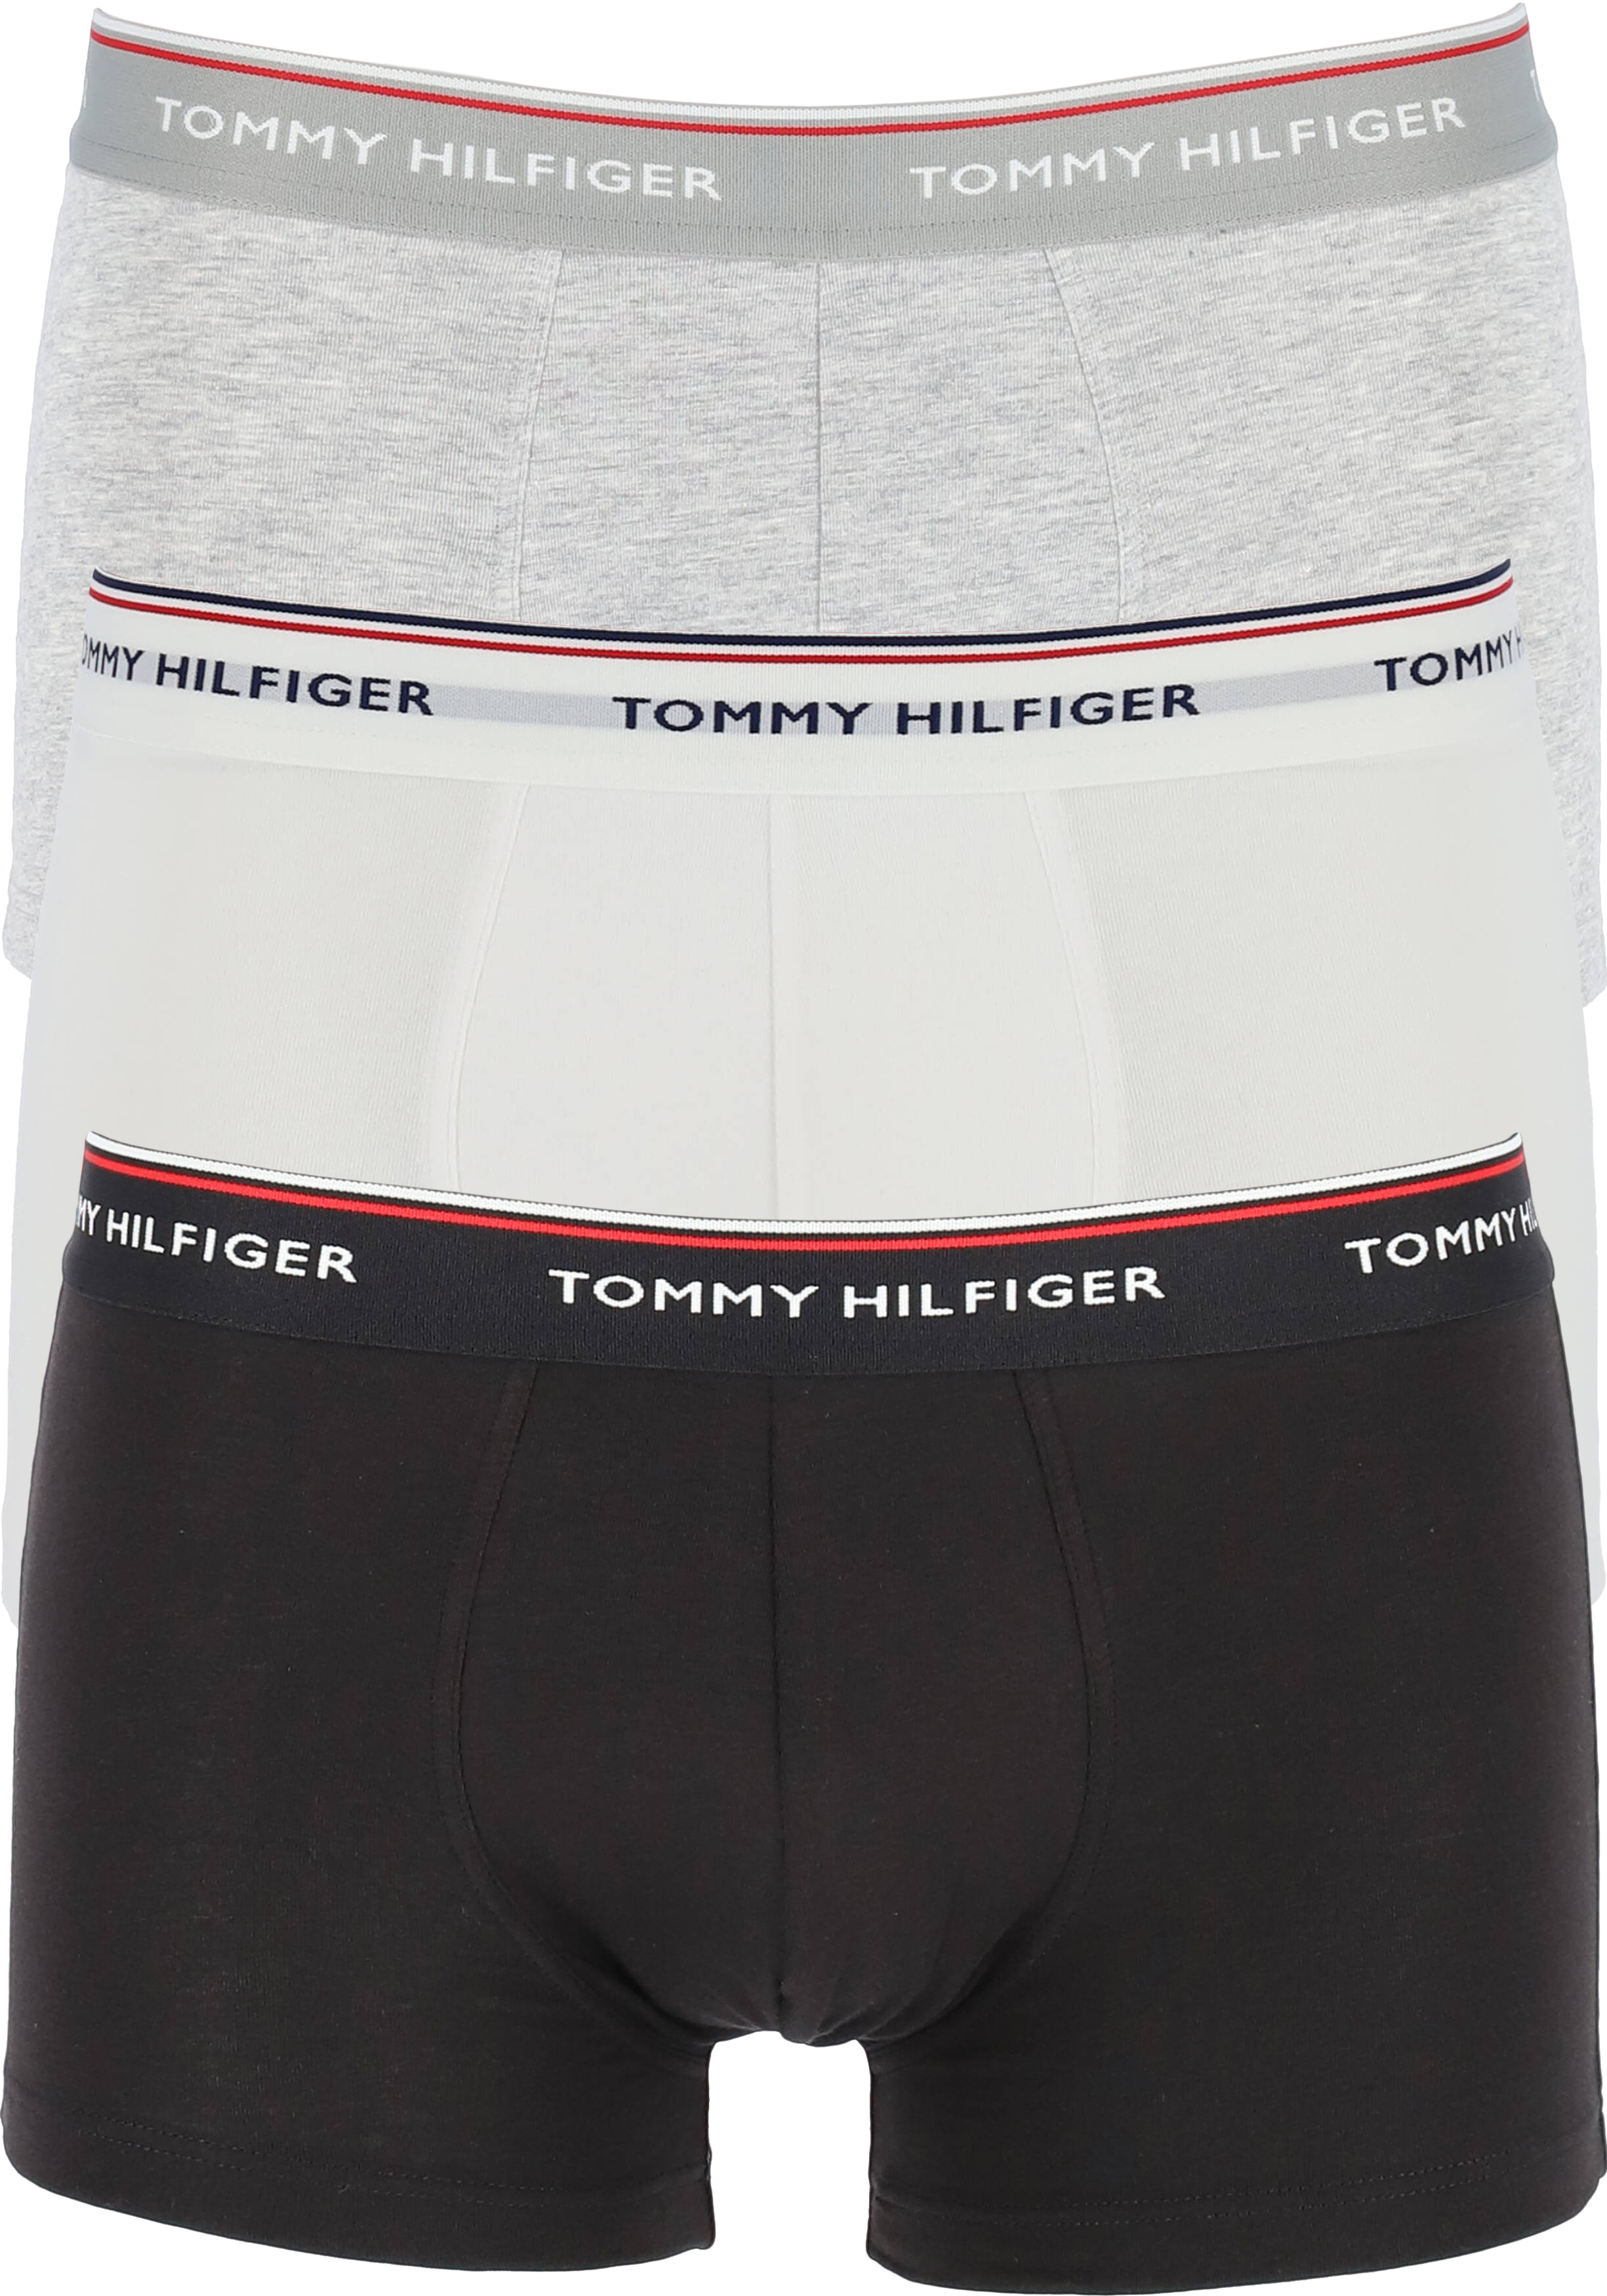 stil meerderheid vergeetachtig Tommy Hilfiger low rise trunk (3-pack), lage heren boxers kort, zwart,... -  Shop de nieuwste voorjaarsmode